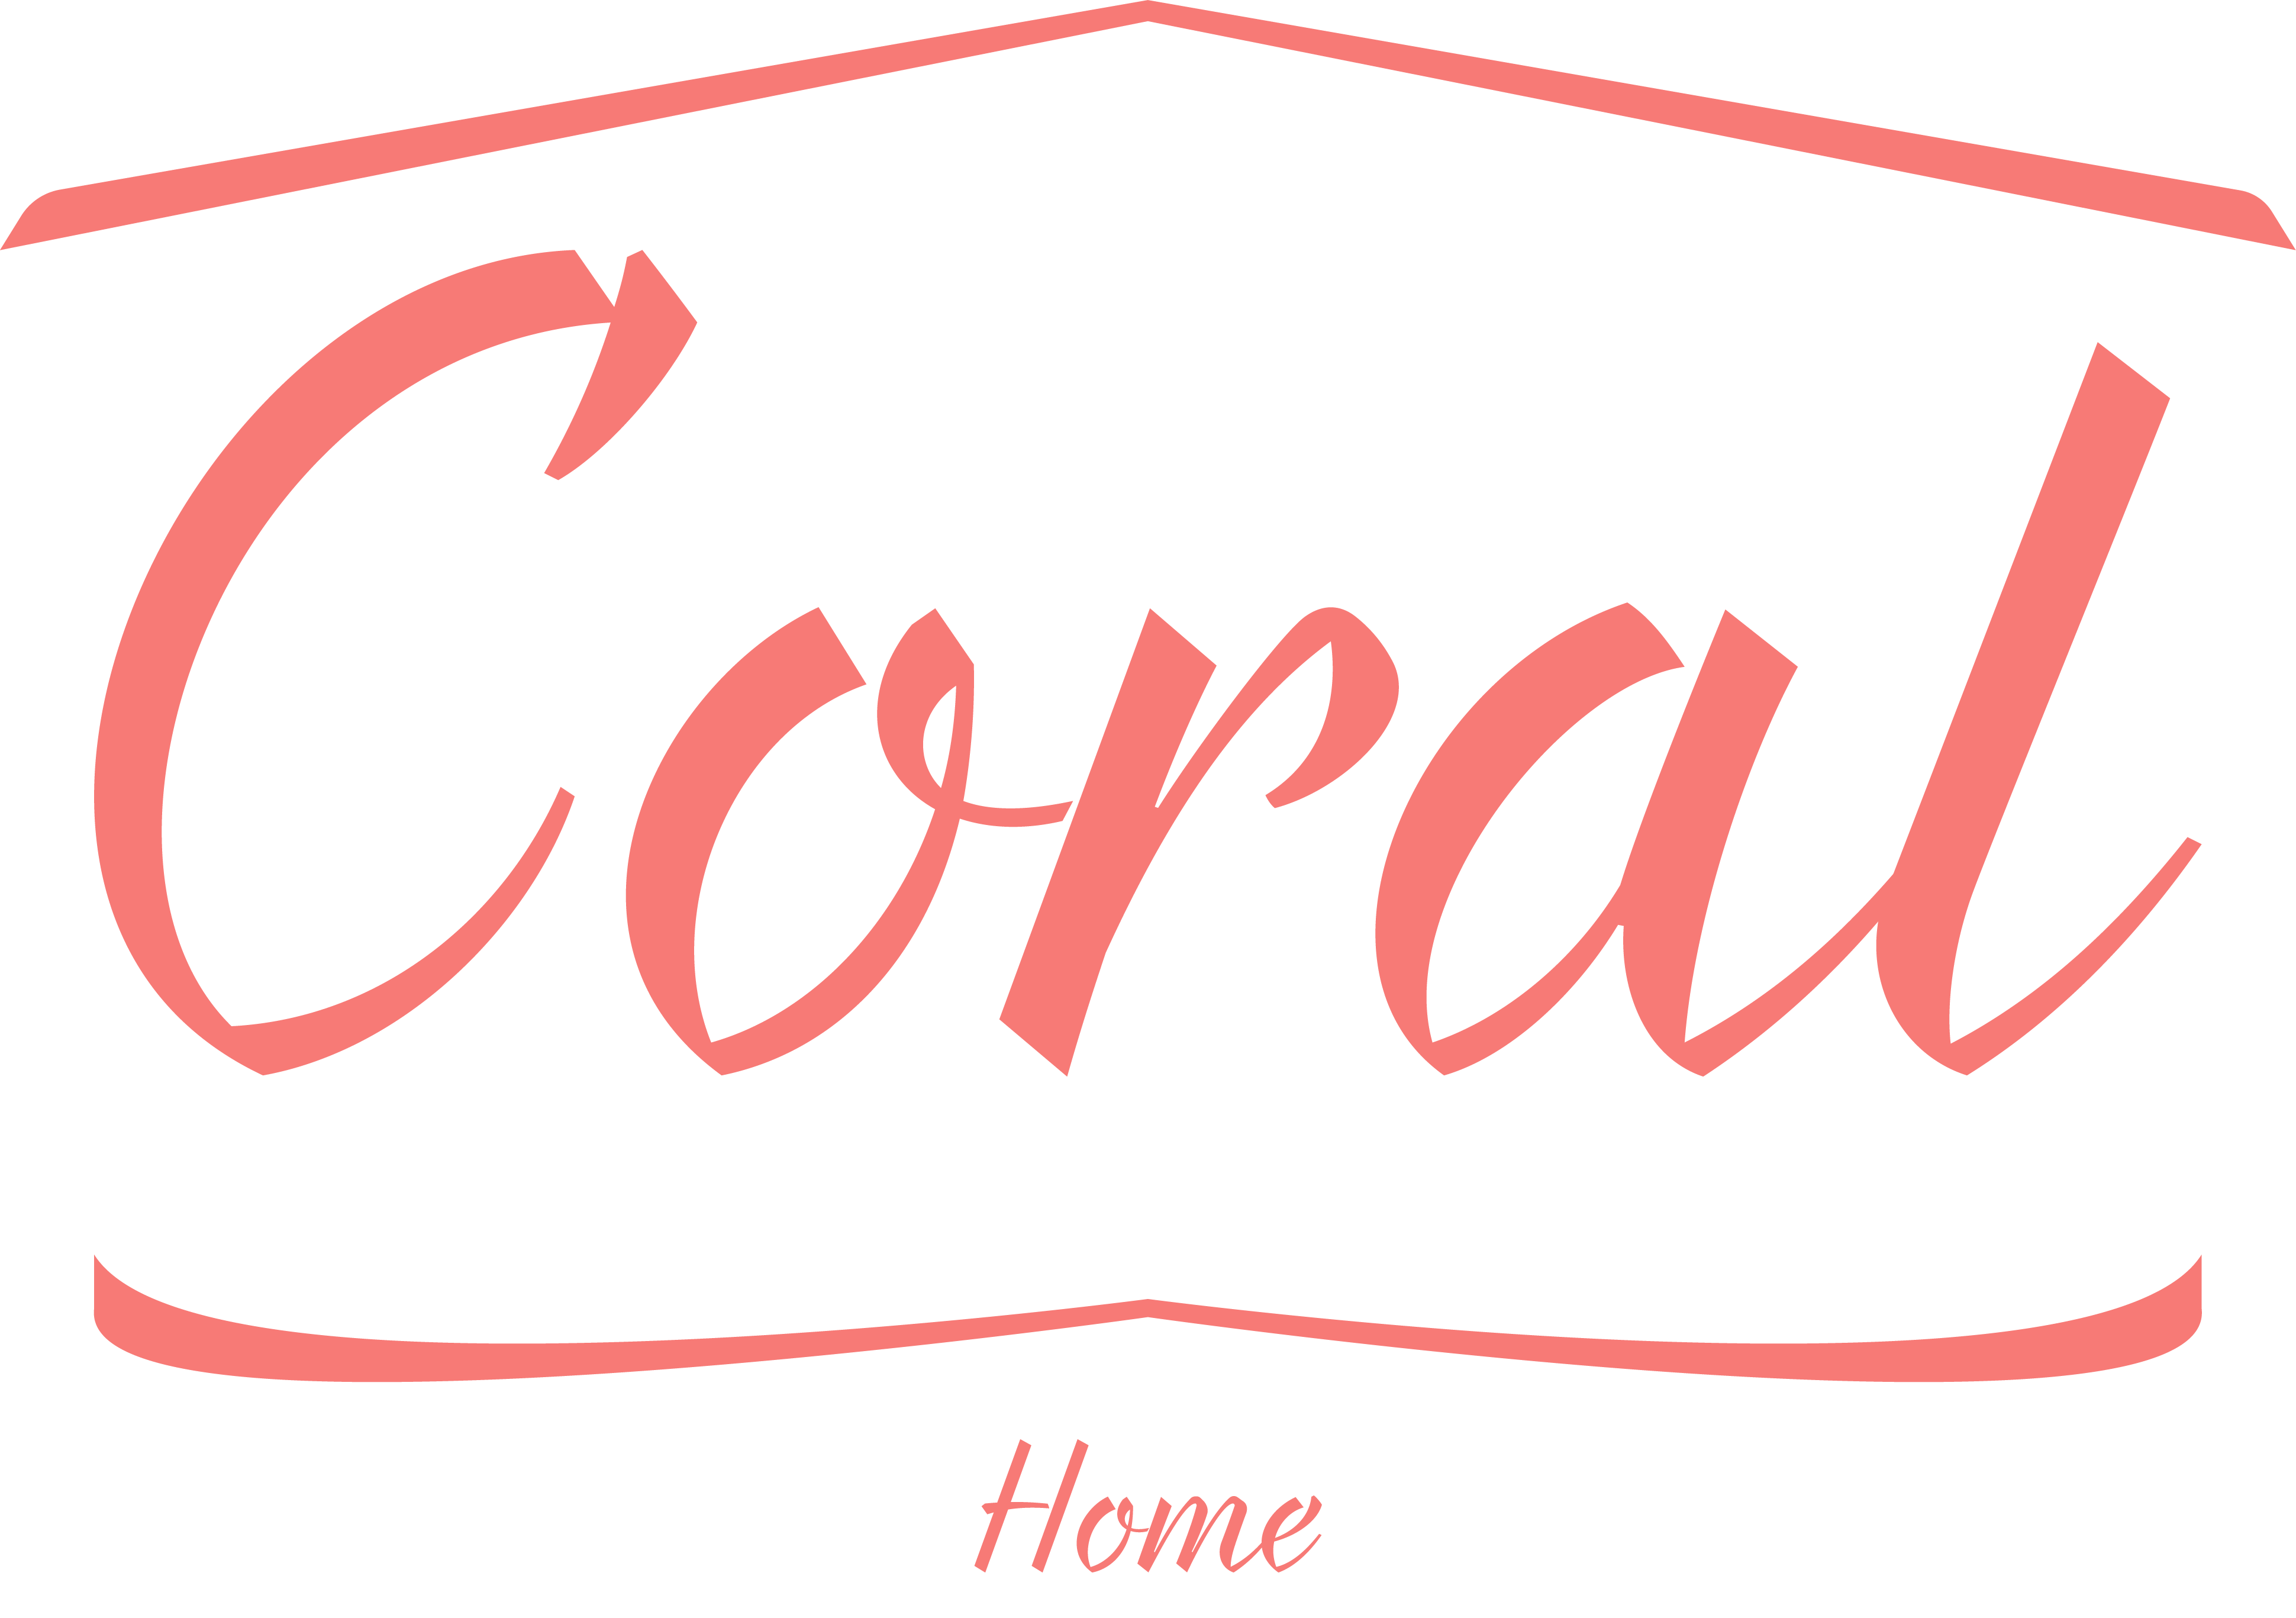 Cucharas medidoras set x10 para cocina - Coral Home